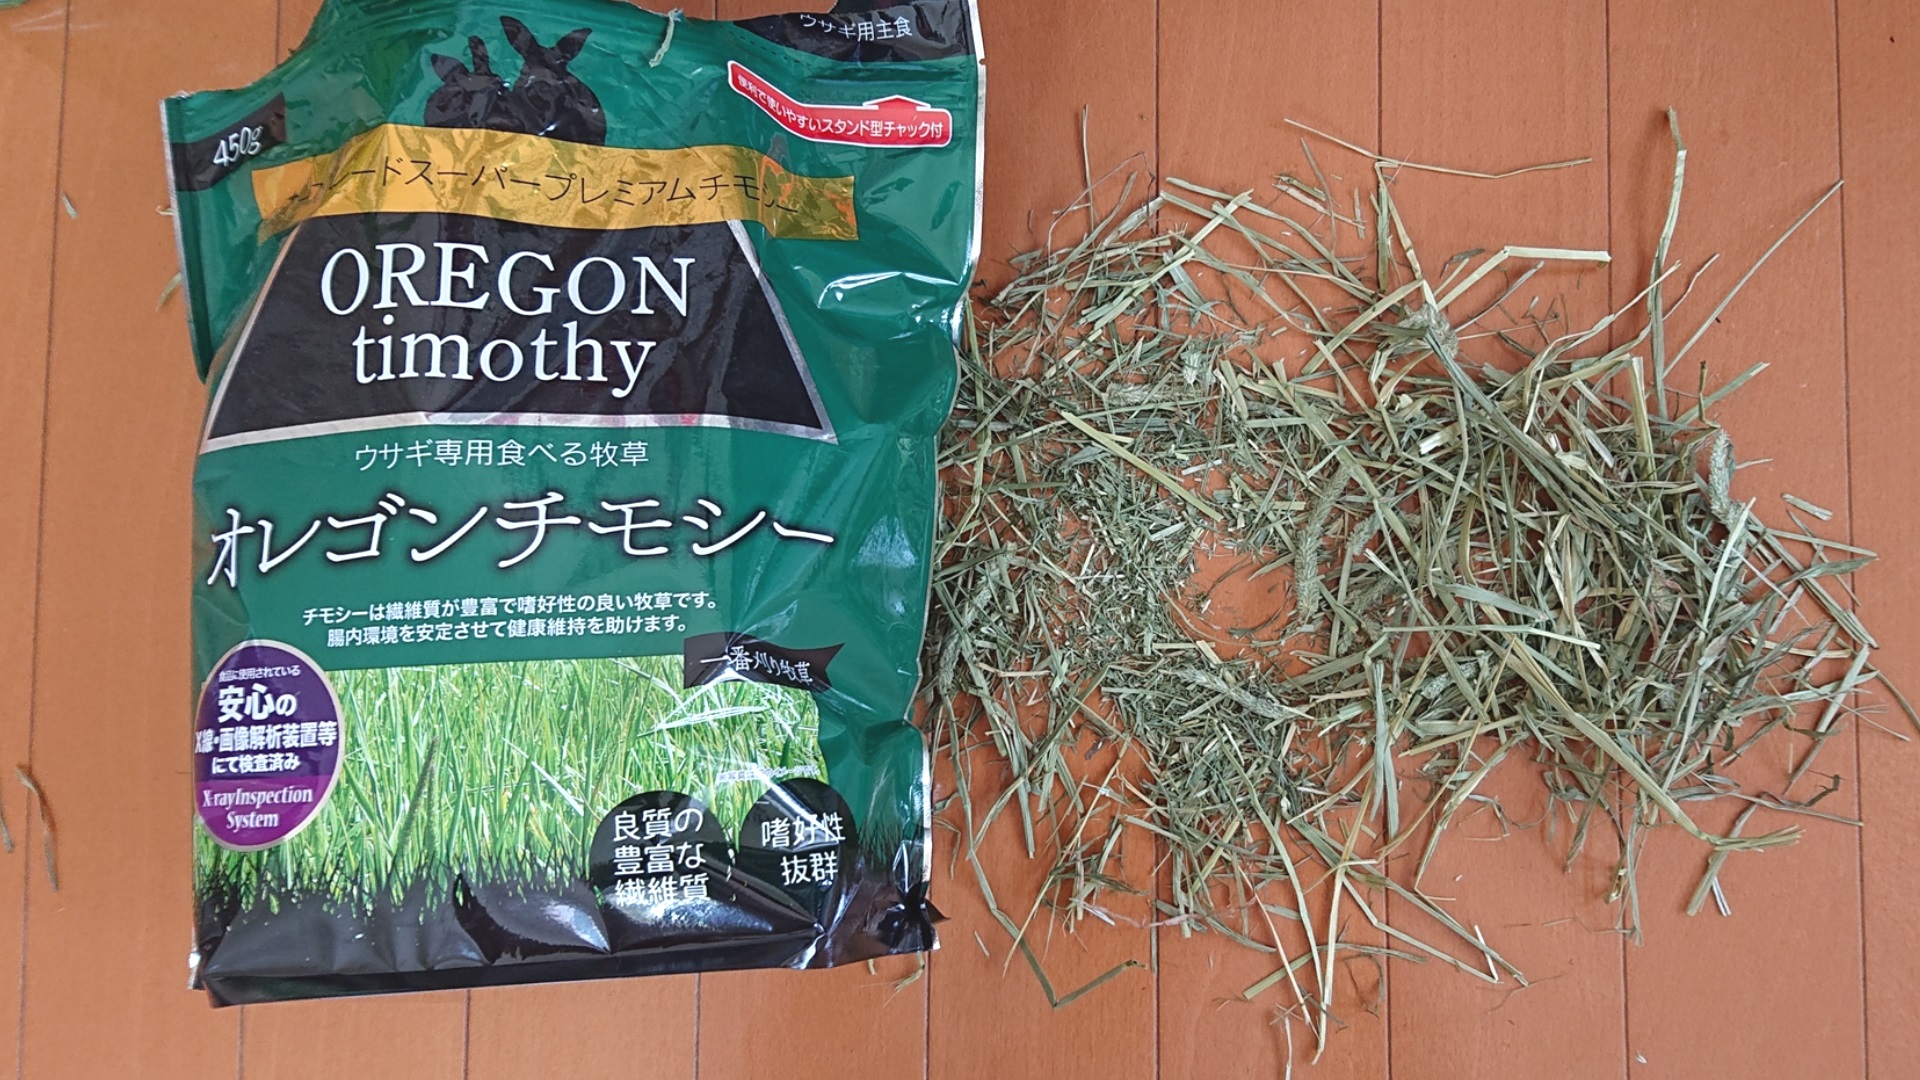 アラタ ウサギ専用食べる牧草 オレゴンチモシー。アルミの保存袋にギュウギュウに詰められたチモシー。
全体的に茎が短いです。
長めの茎がお好みの我が家のアメファジ「みみ先生」にはイマイチでした。